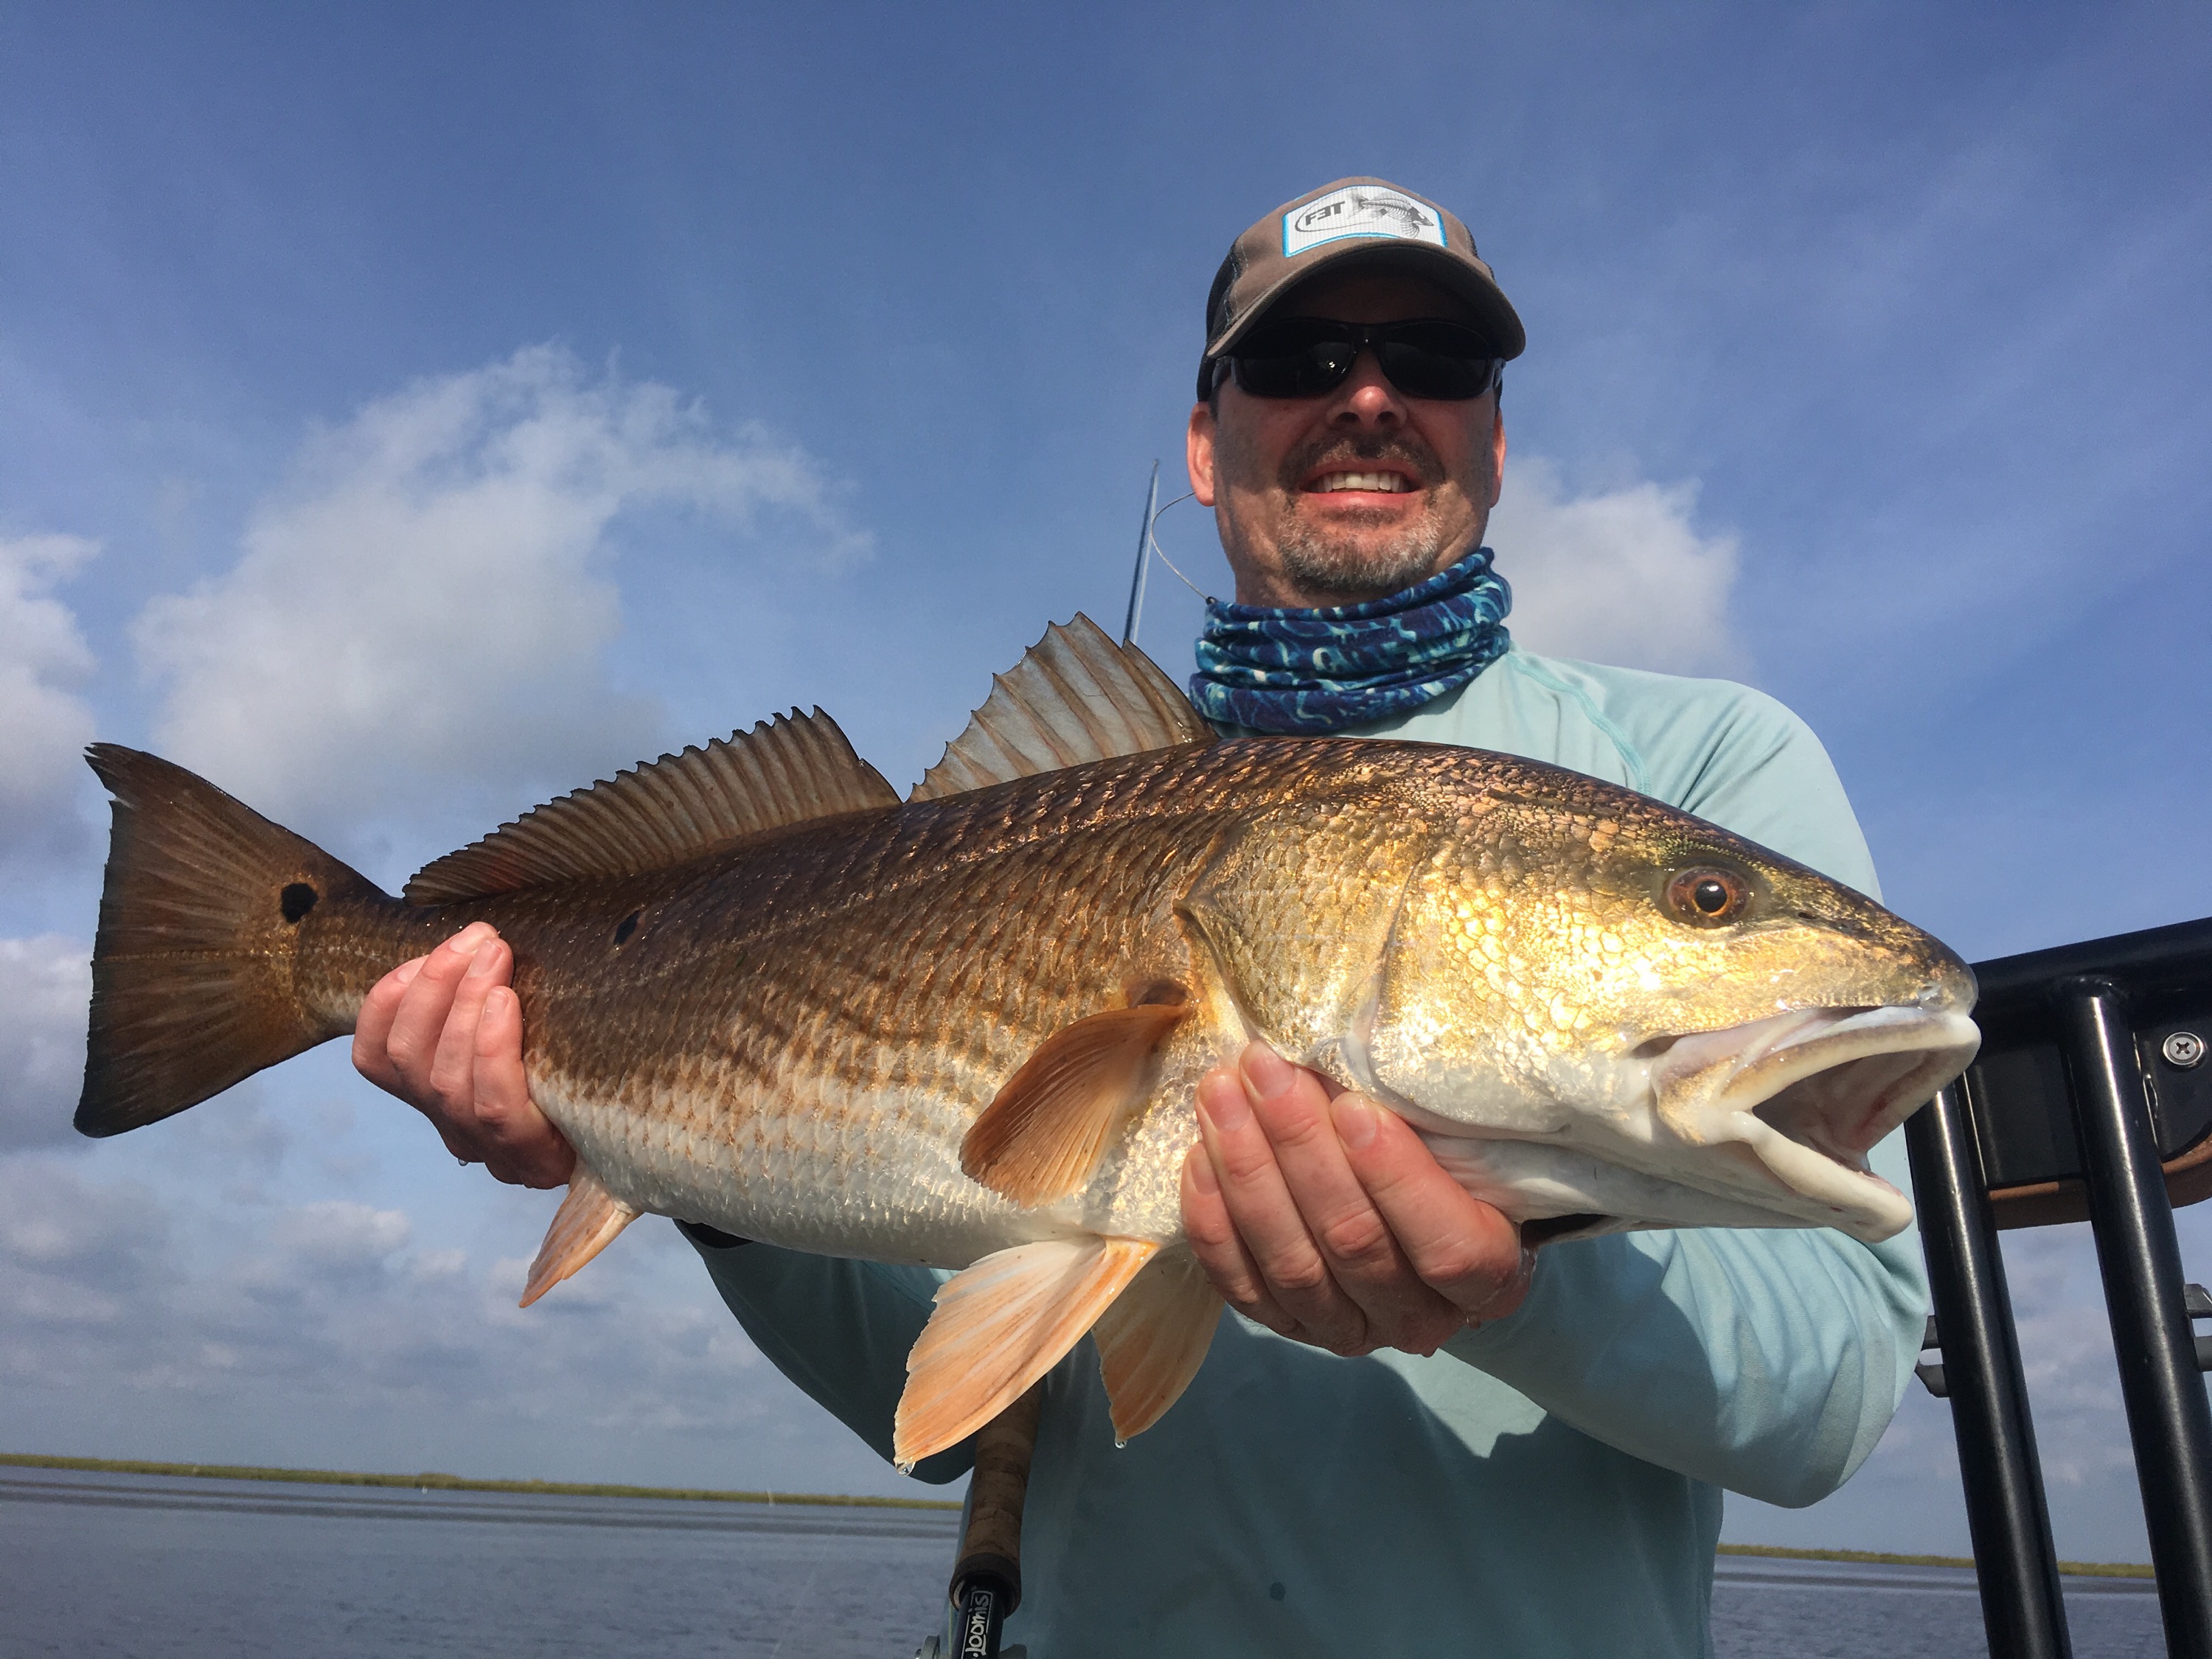 Man enjoying Spring Flyfishing at New Orleans